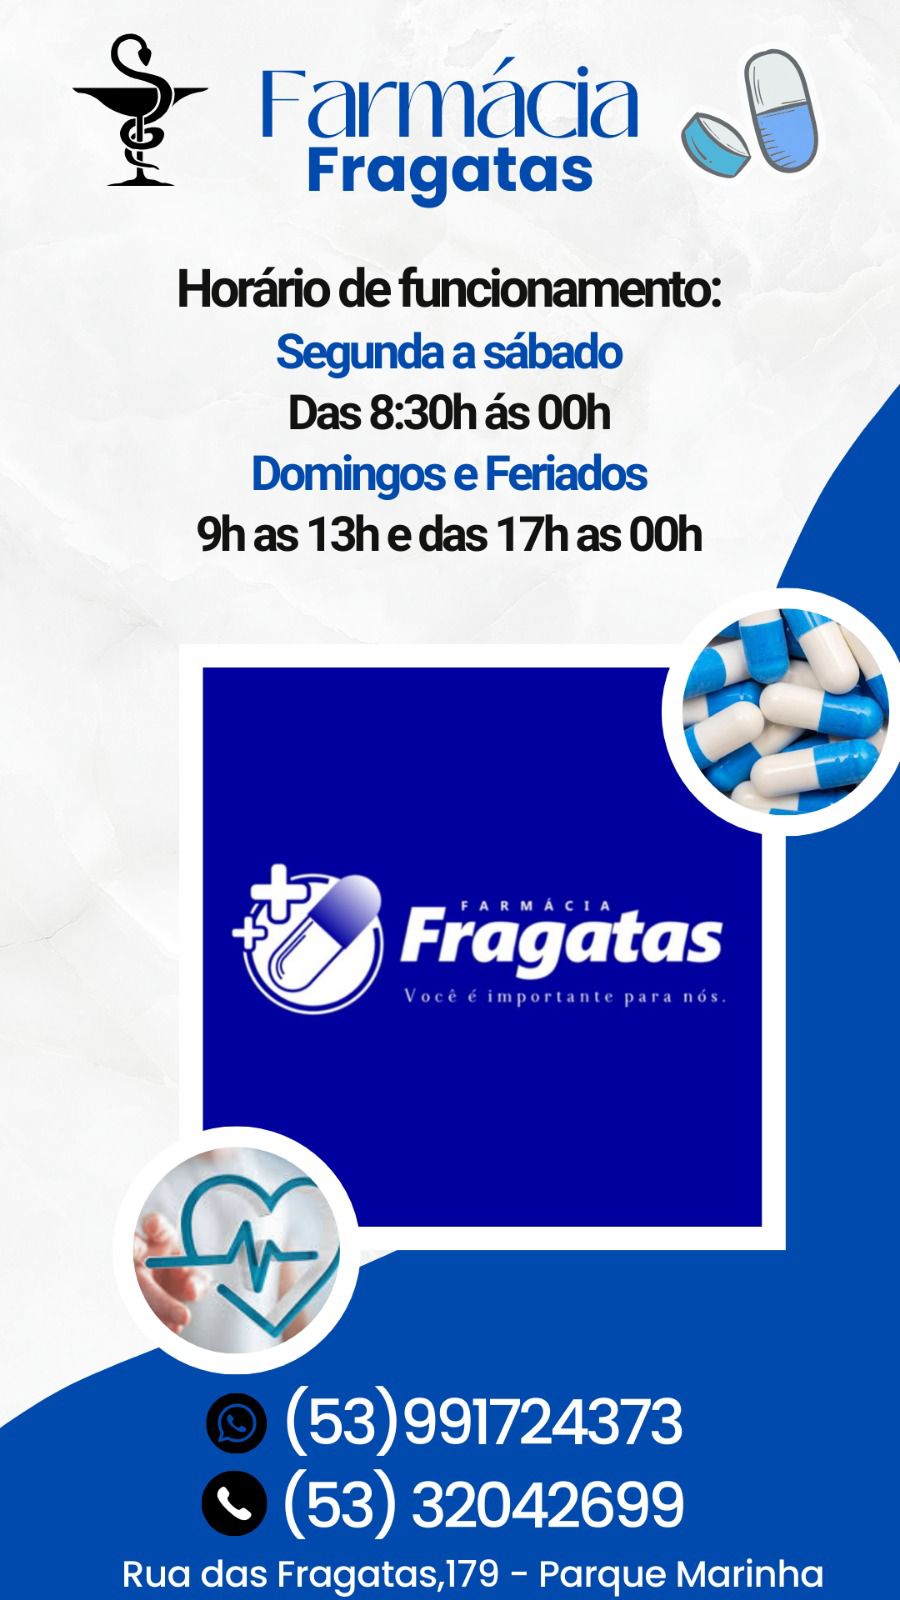 Farmácia Fragatas